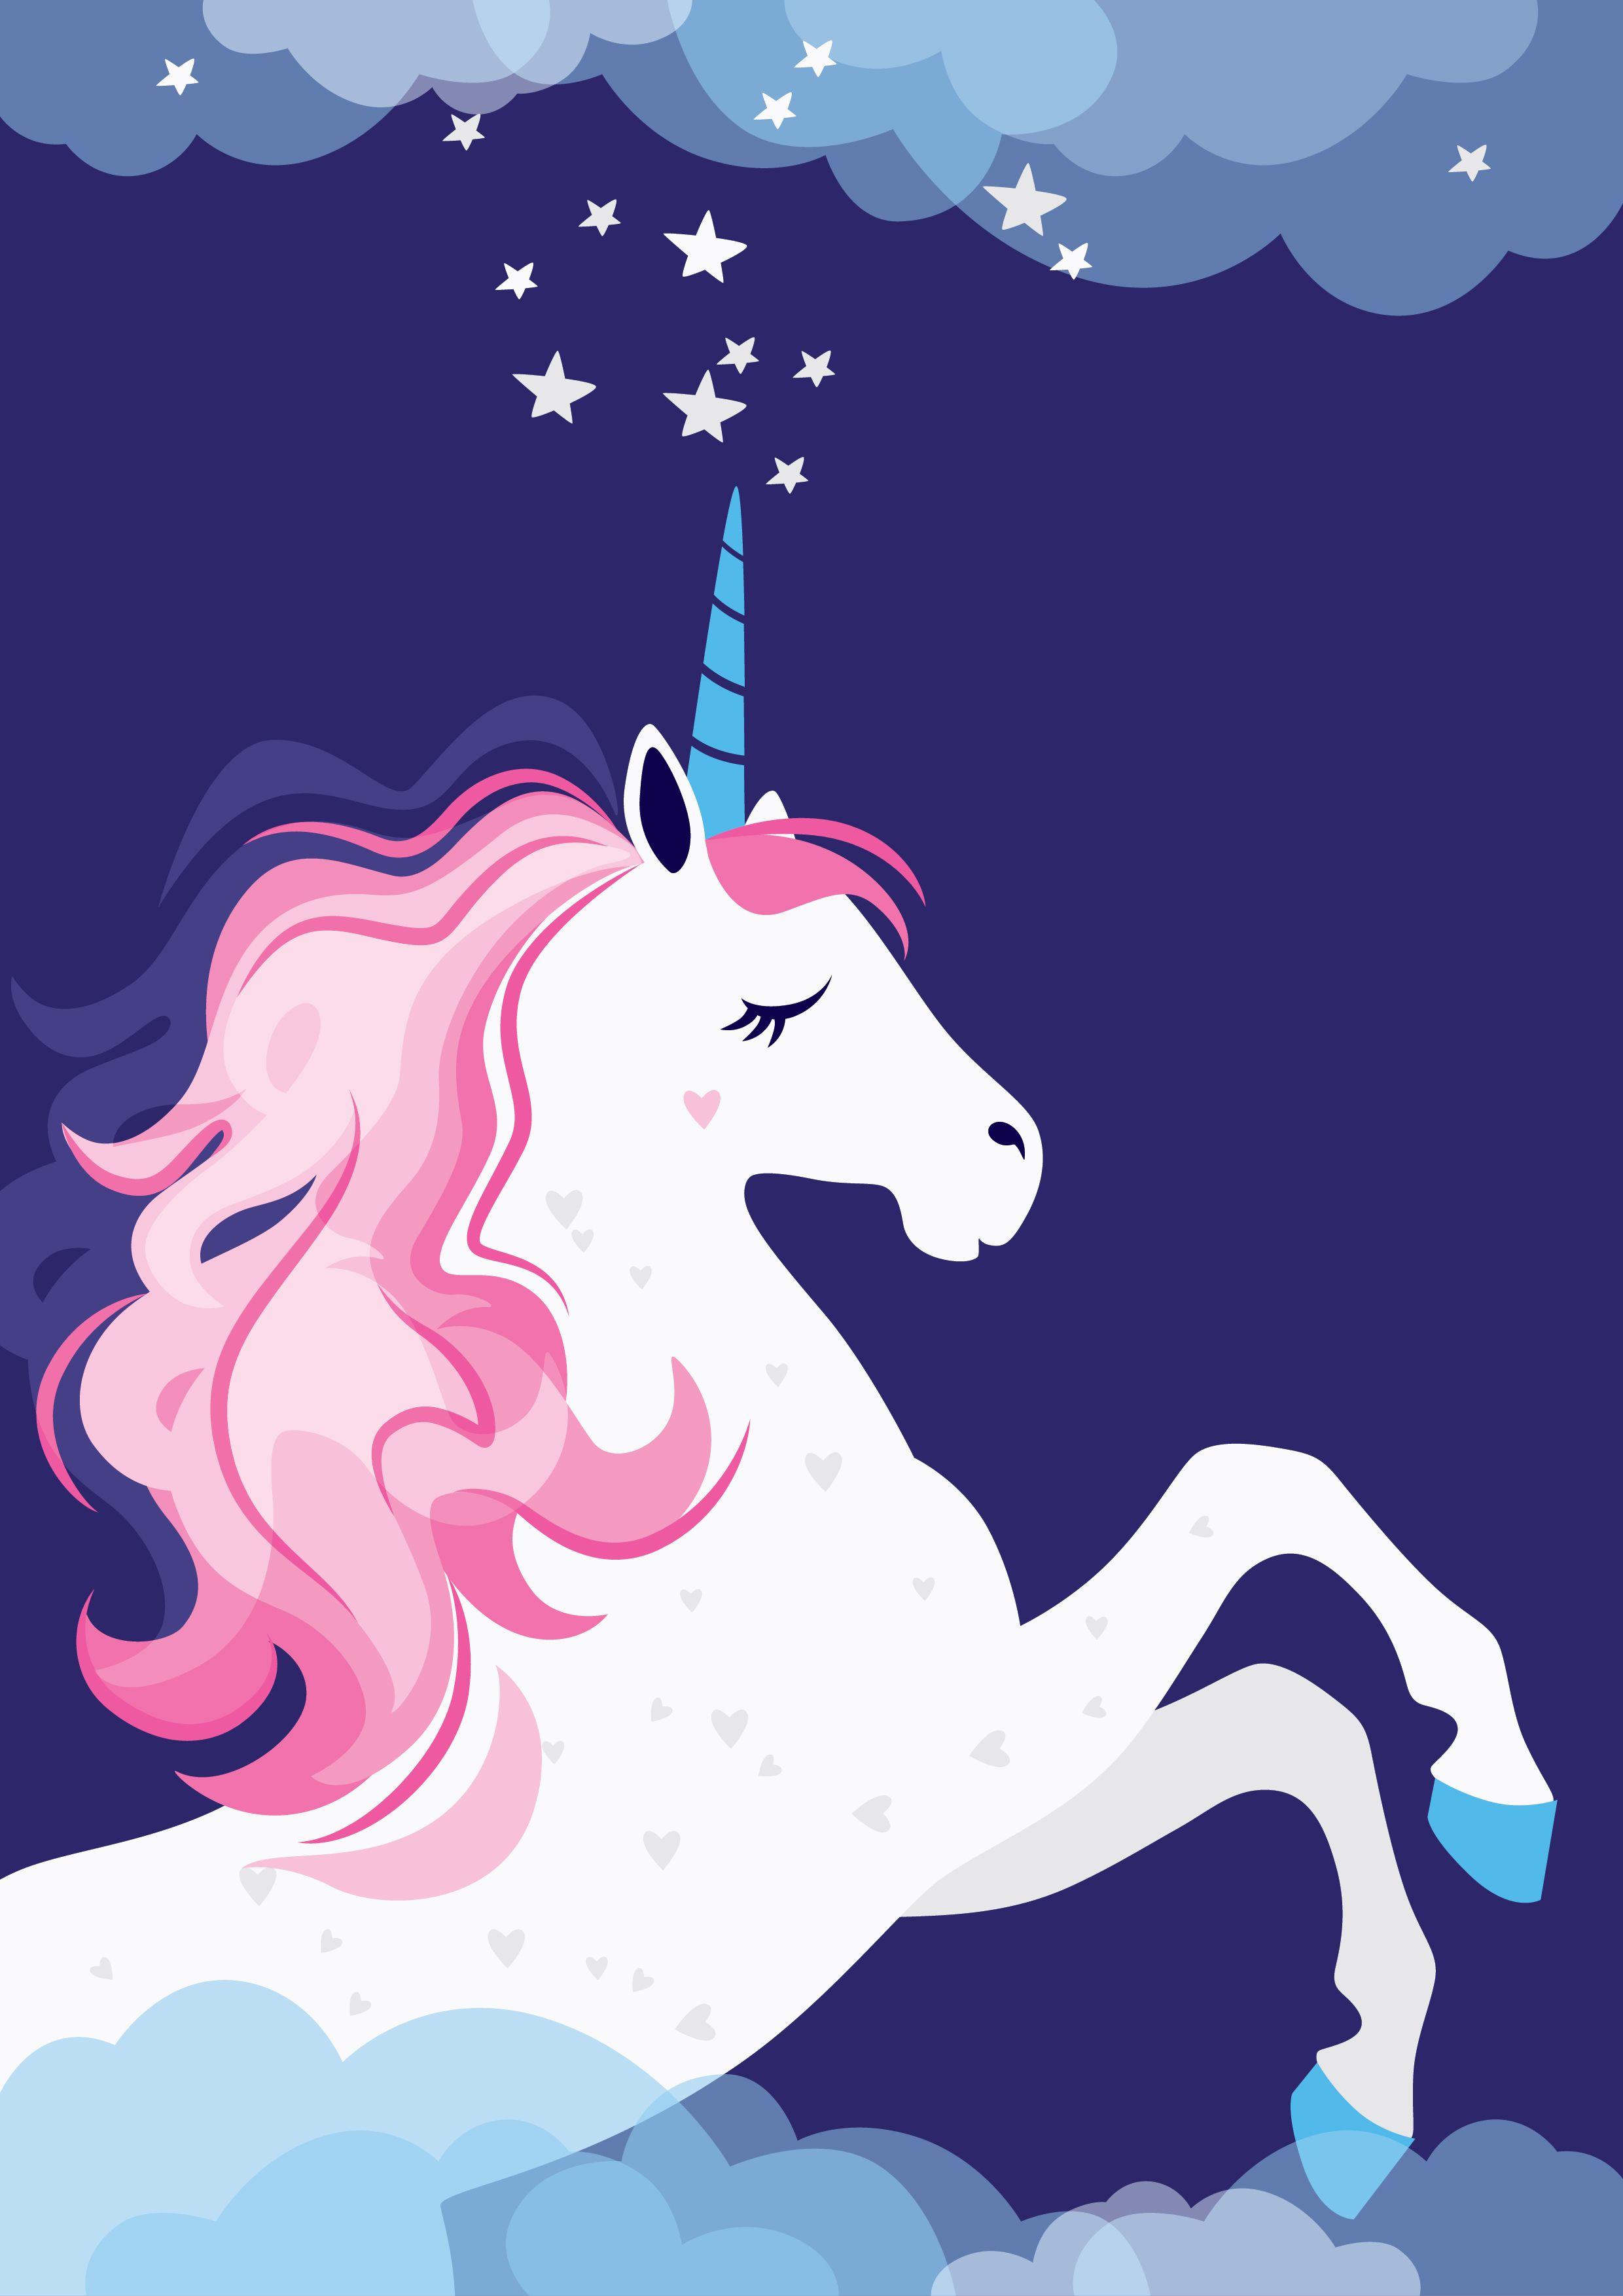 Unicorn Girl Wallpapers - Top Free Unicorn Girl Backgrounds ...